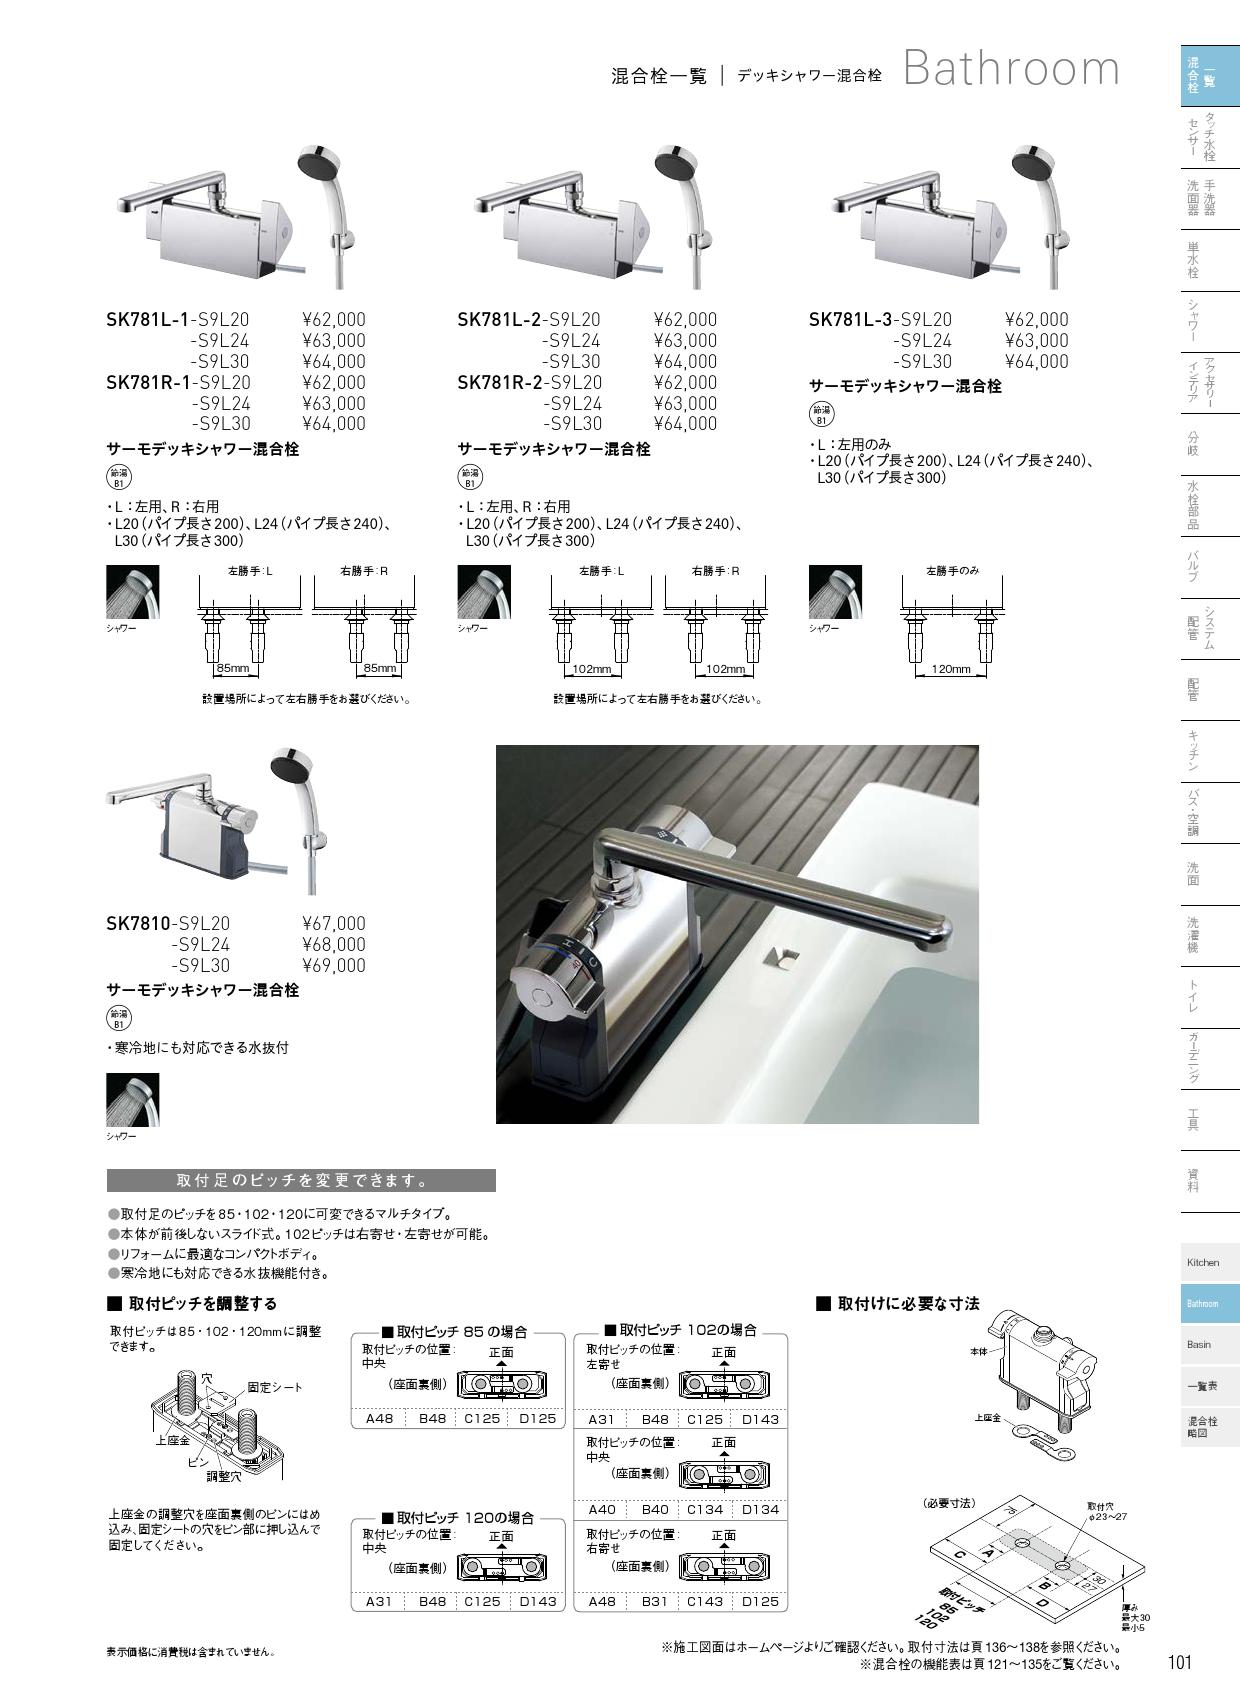 三栄水栓 SANEI　U-MIX BATHROOM サーモデッキシャワー混合栓 SK7810-S9L20 - 2